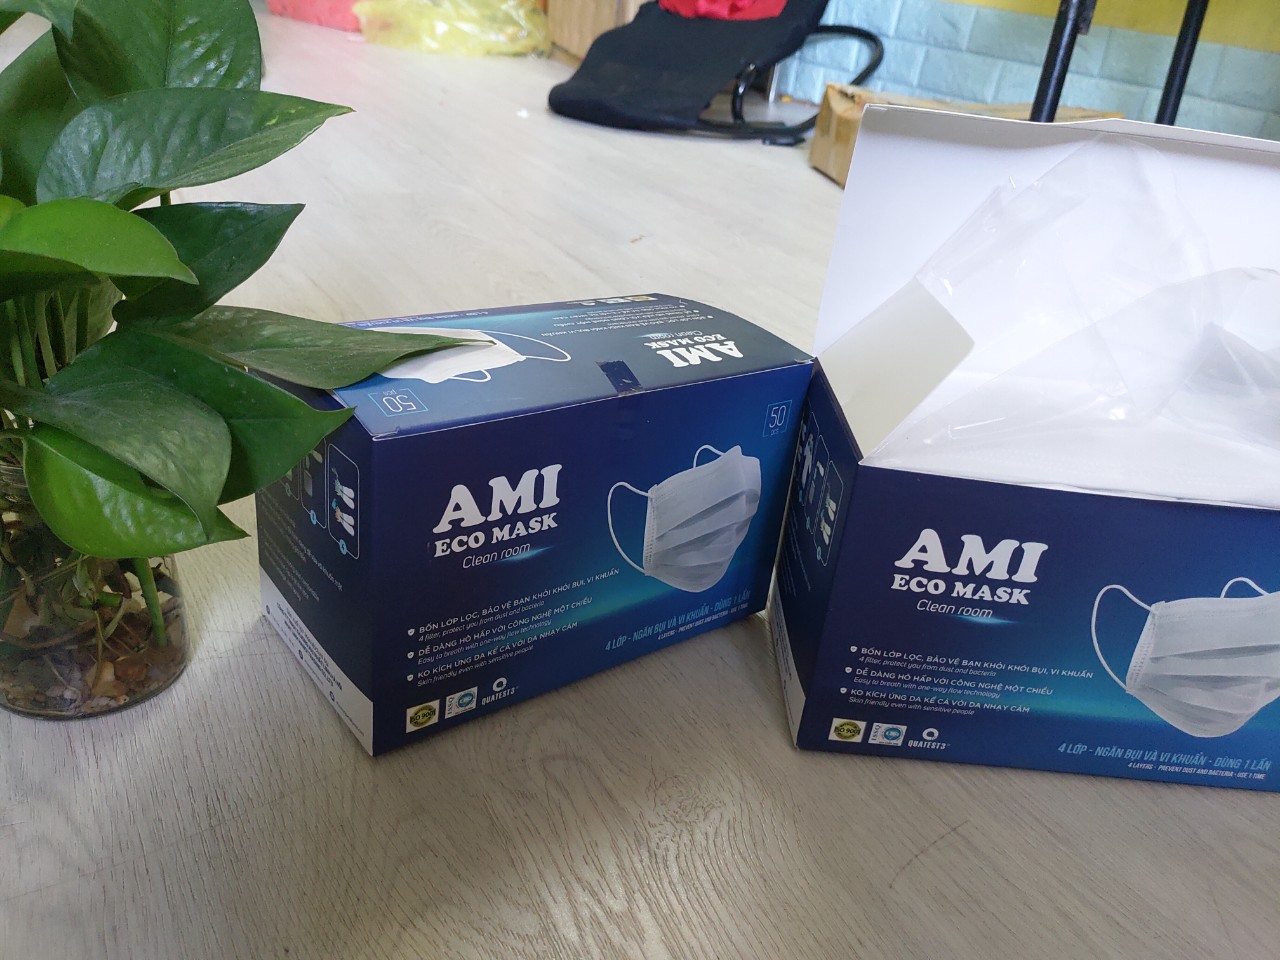 combo 2 hộp khẩu trang y tế ami 4 lớp màu xanh, kháng khuẩn hiệu quả, hộp 50 chiếc, có giấy kiểm định của bộ y tế 1